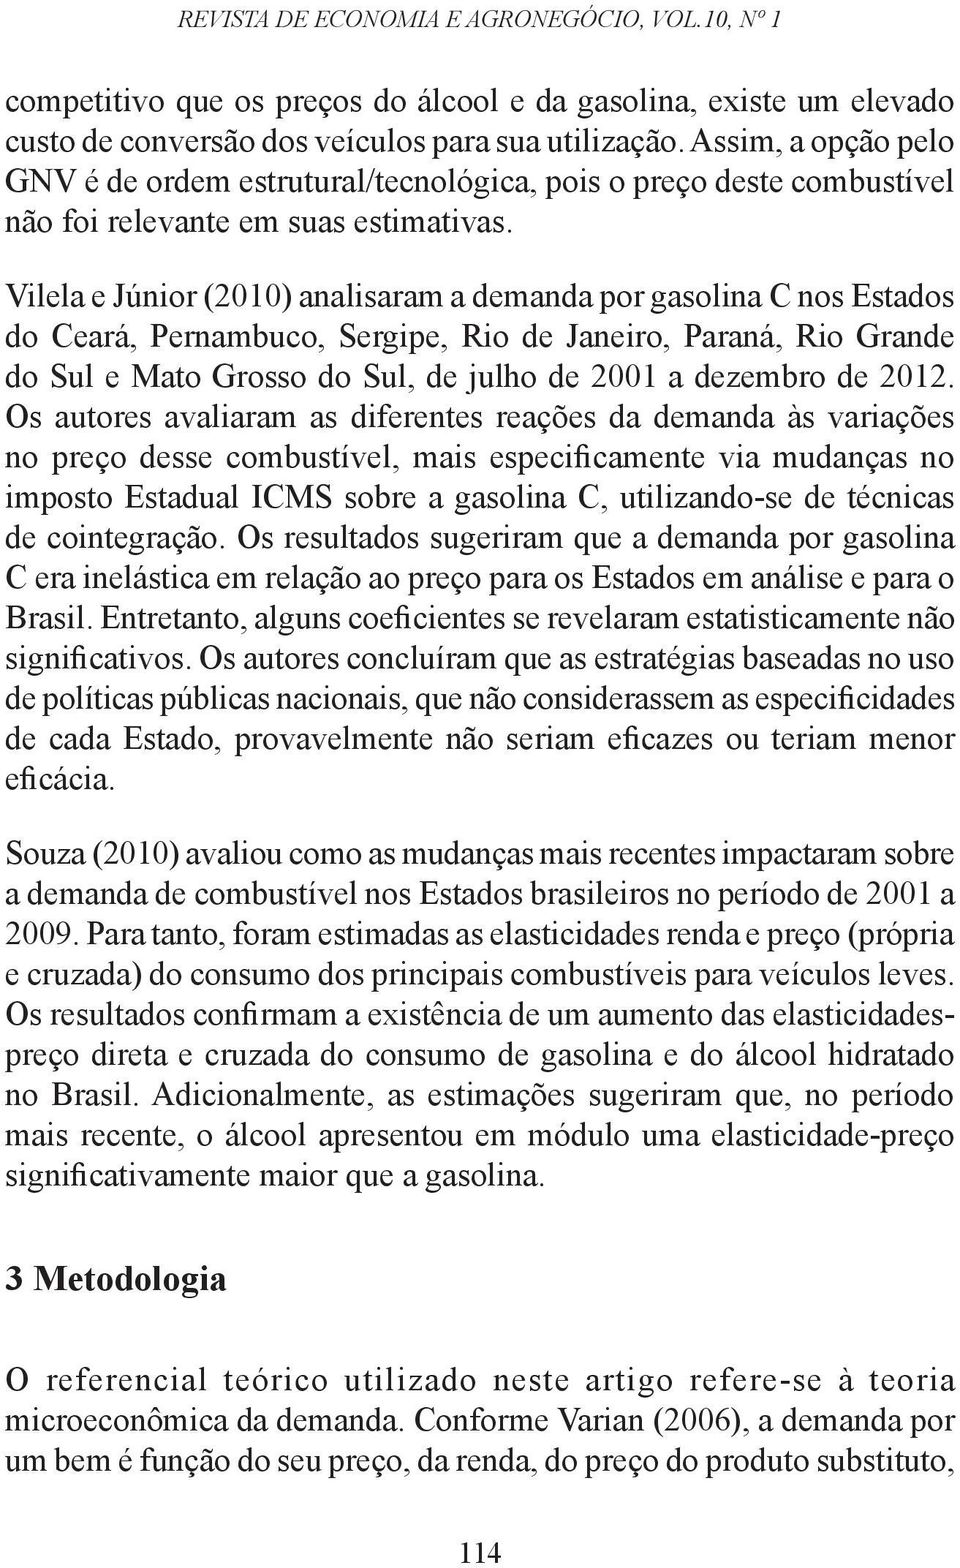 Vilela e Júnior (2010) analisaram a demanda por gasolina C nos Esados do Ceará, Pernambuco, Sergipe, Rio de Janeiro, Paraná, Rio Grande do Sul e Mao Grosso do Sul, de julho de 2001 a dezembro de 2012.